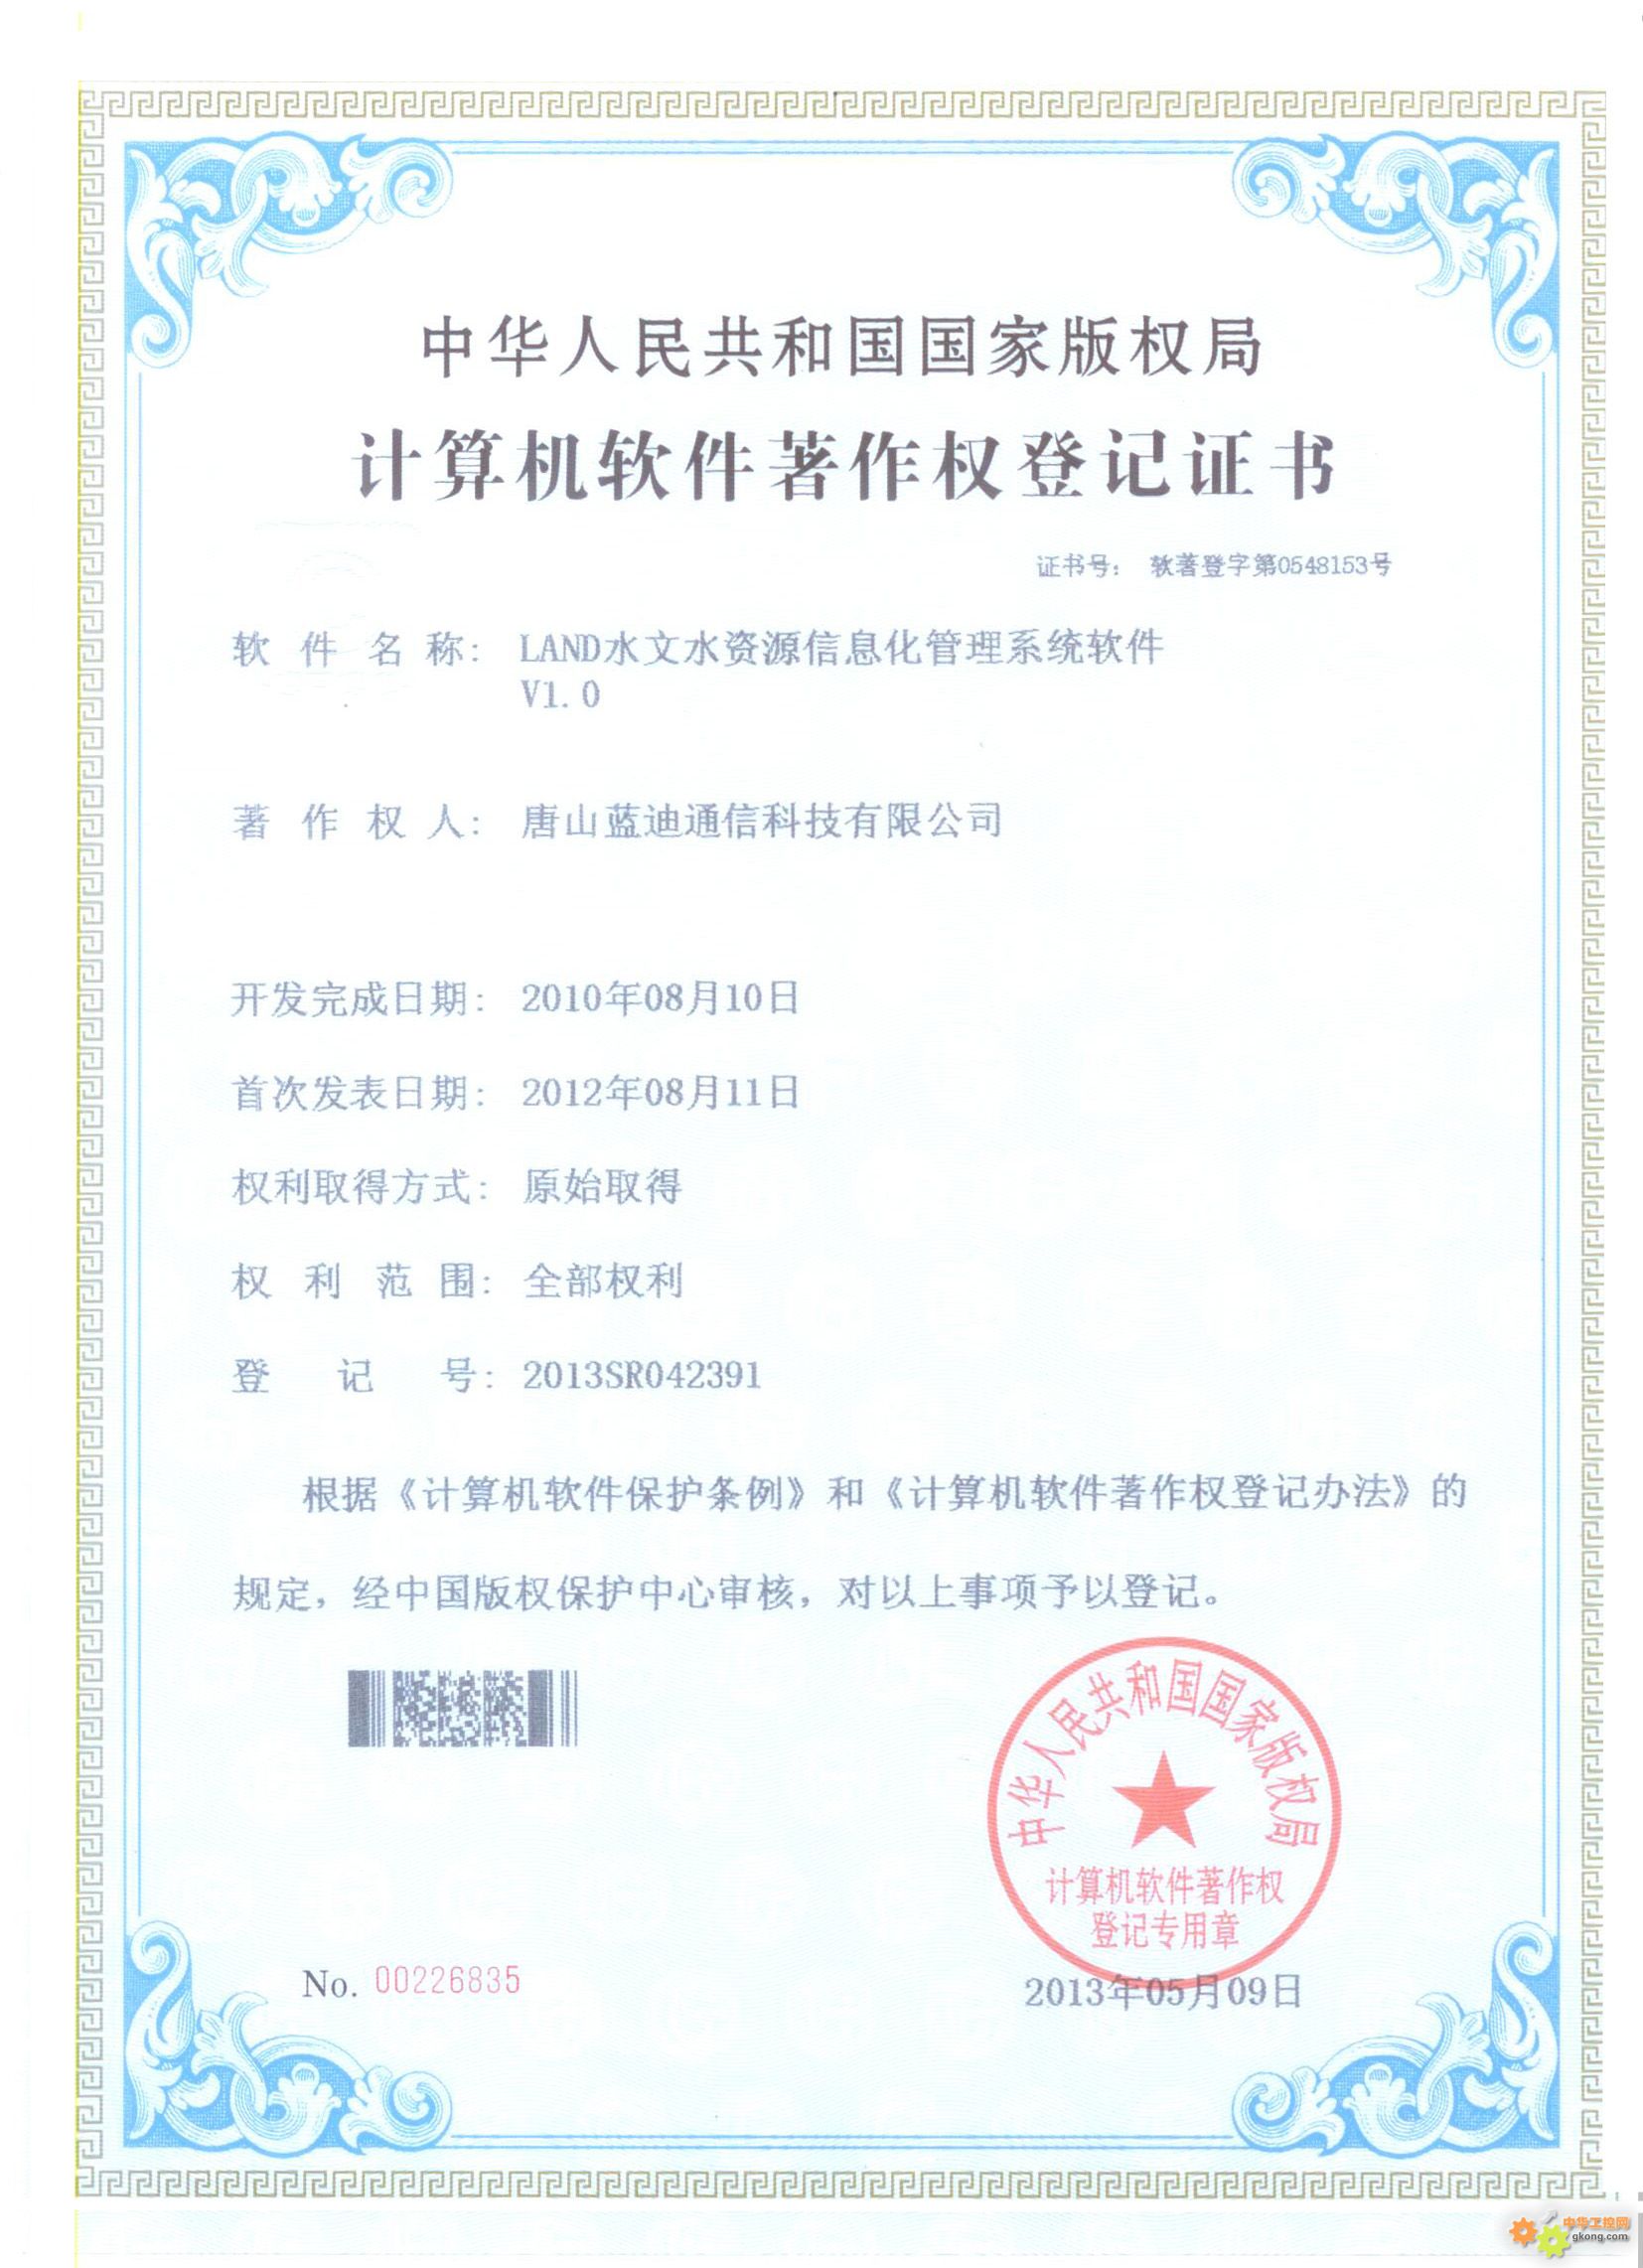 蓝迪公司成功申请计算机软件著作权登记证书(